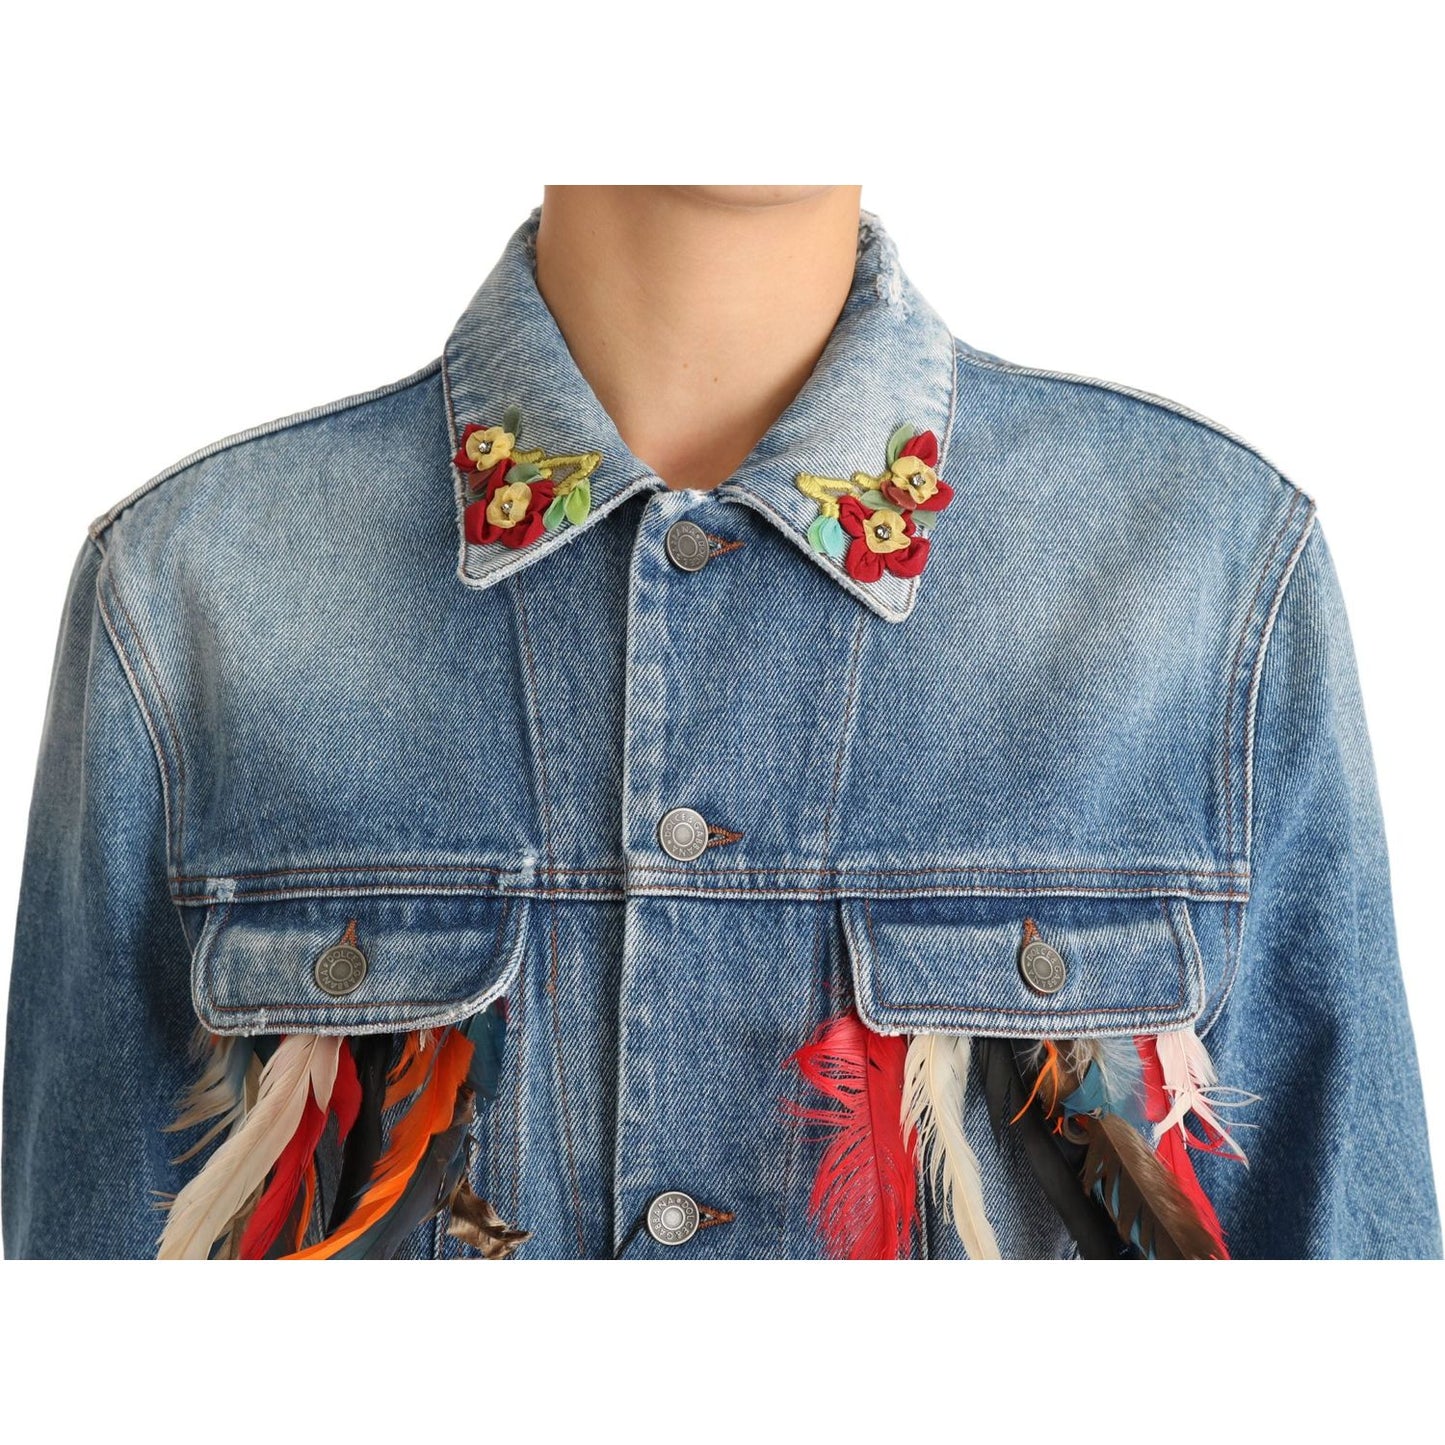 Dolce & Gabbana Floral Embroidered Denim Elegance Jacket Coats & Jackets denim-blue-jeans-feather-floral-jacket